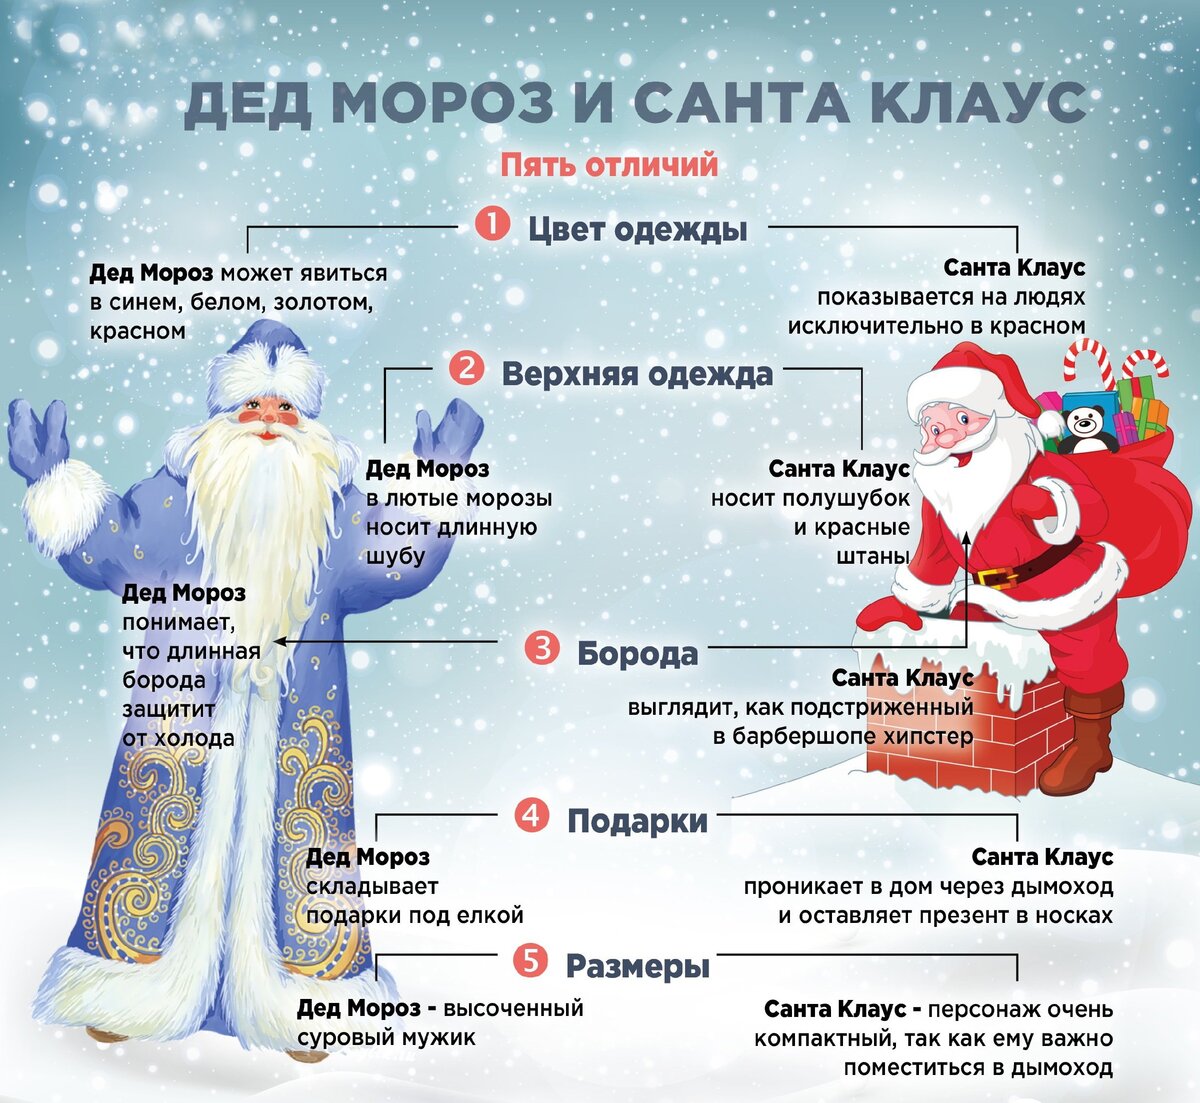 Сколько можно дед. Различия Деда Мороза и Санта Клауса. Различия между дедом Морозом и Санта Клаусом. Дед Мороз и сантаелаус.